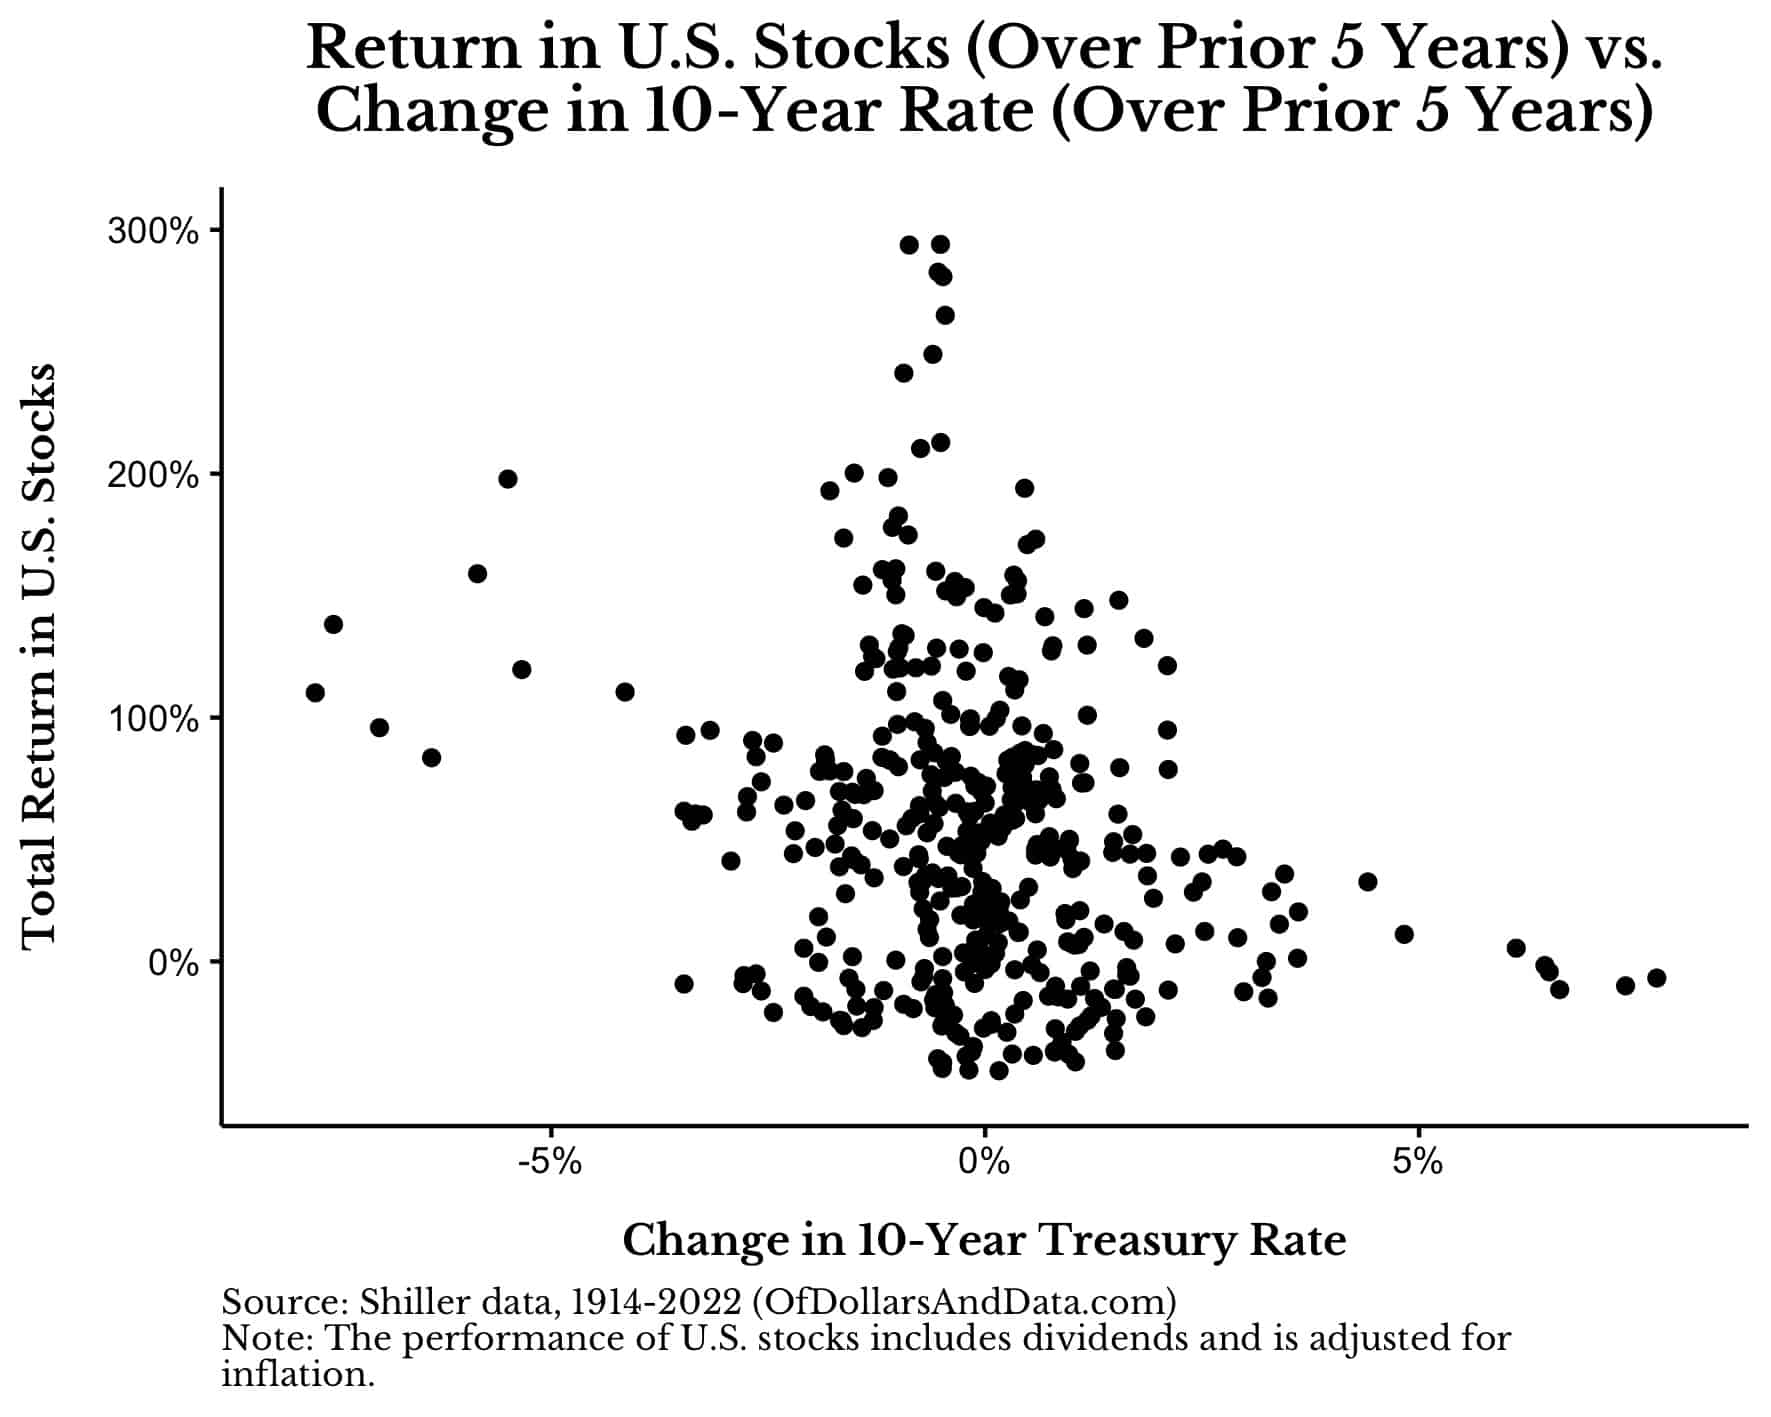 Return in US stocks over prior five years vs change in 10-year Treasury Rate over prior five years